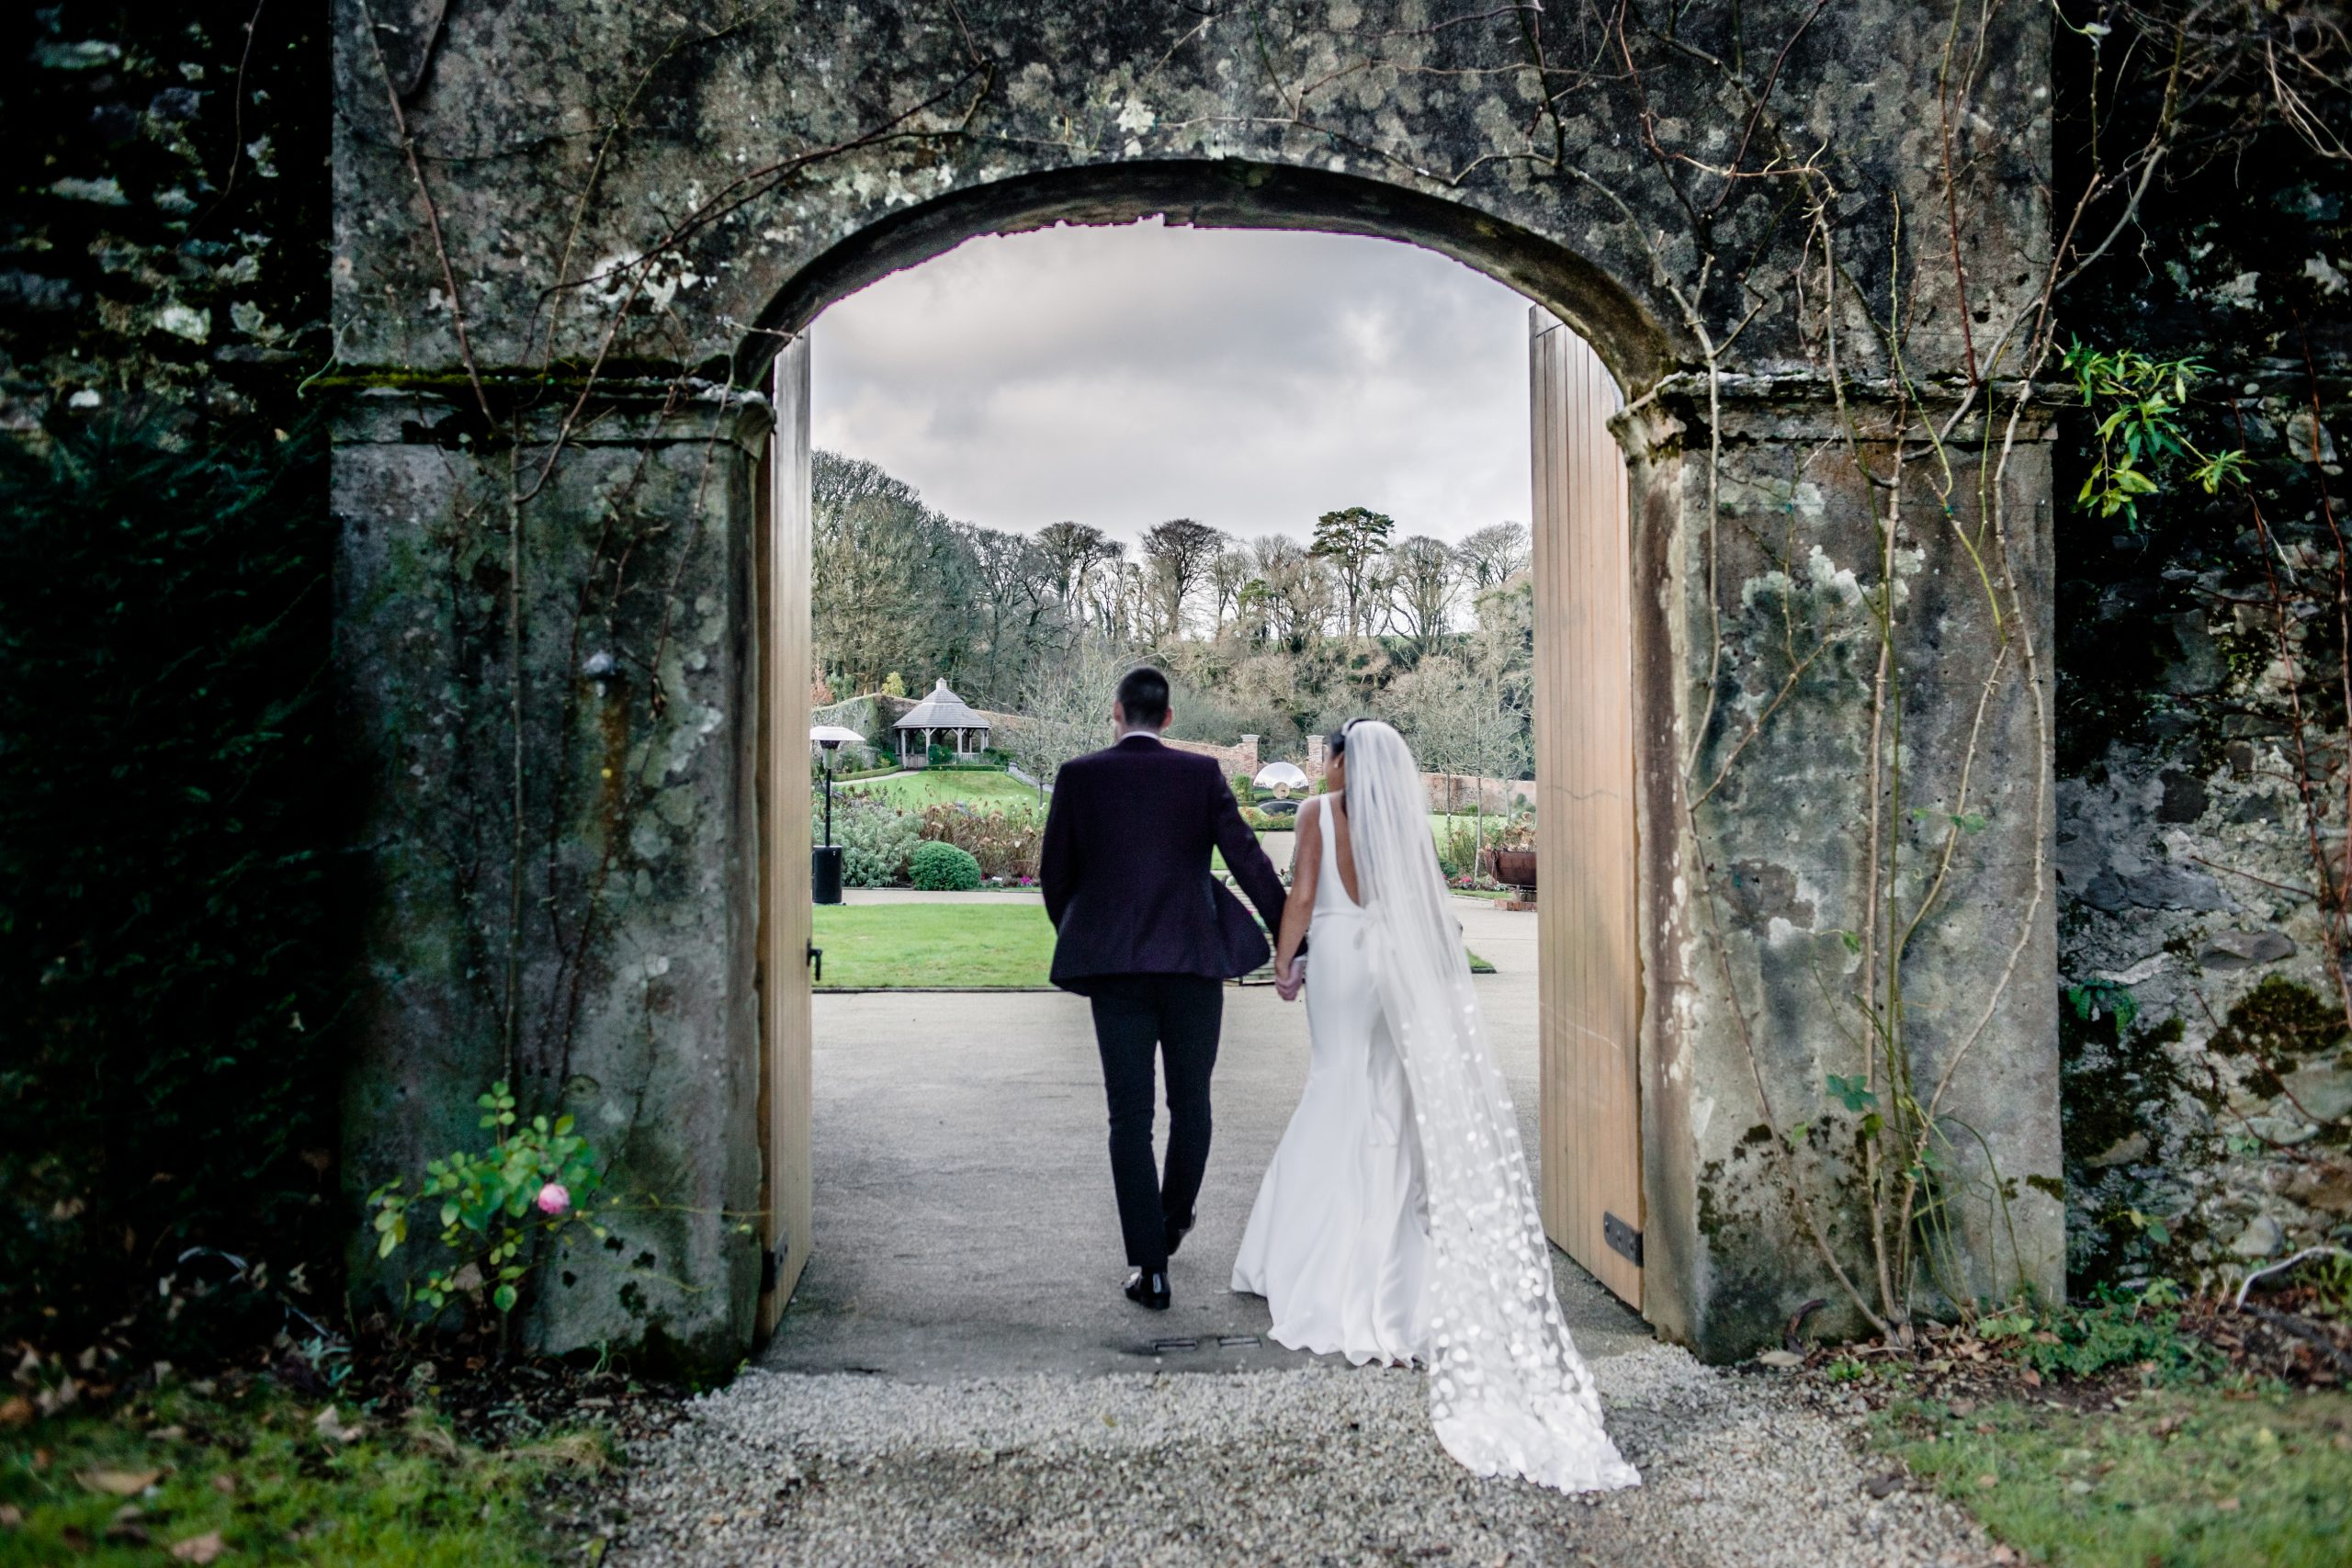 The Wedding of Róisín Feeney & Paul Whyte, St. Brigids Church Kilrossanty, and The Woodhouse Estate, Stradbally, County Waterford, Ireland